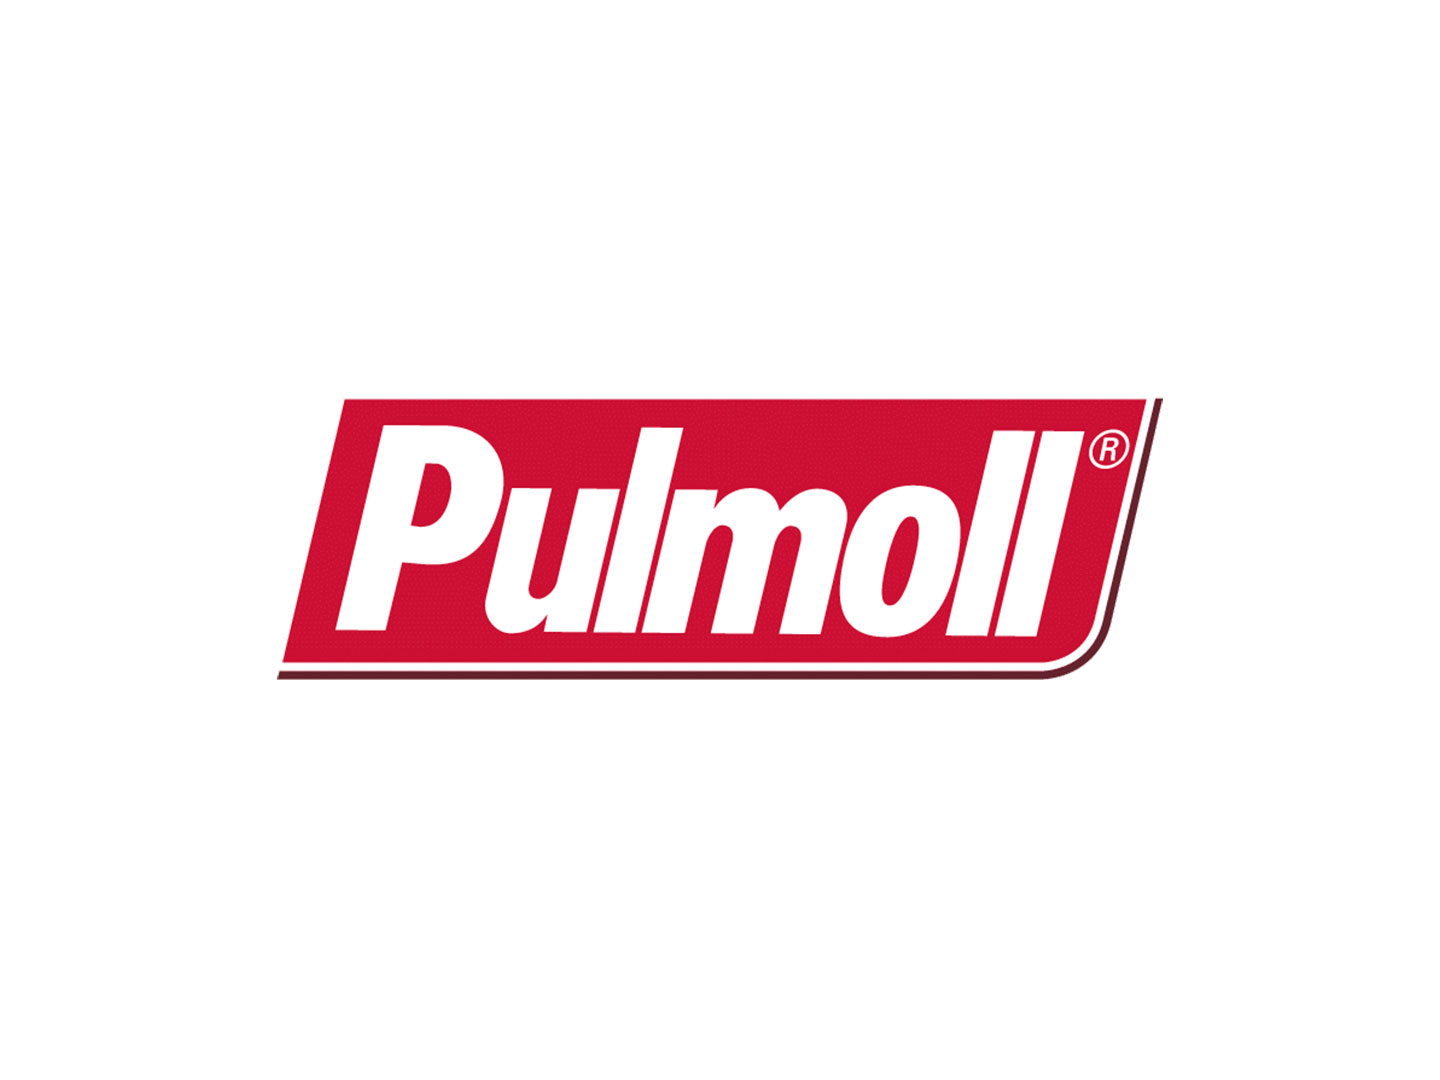 Pulmoll – Wikipedia